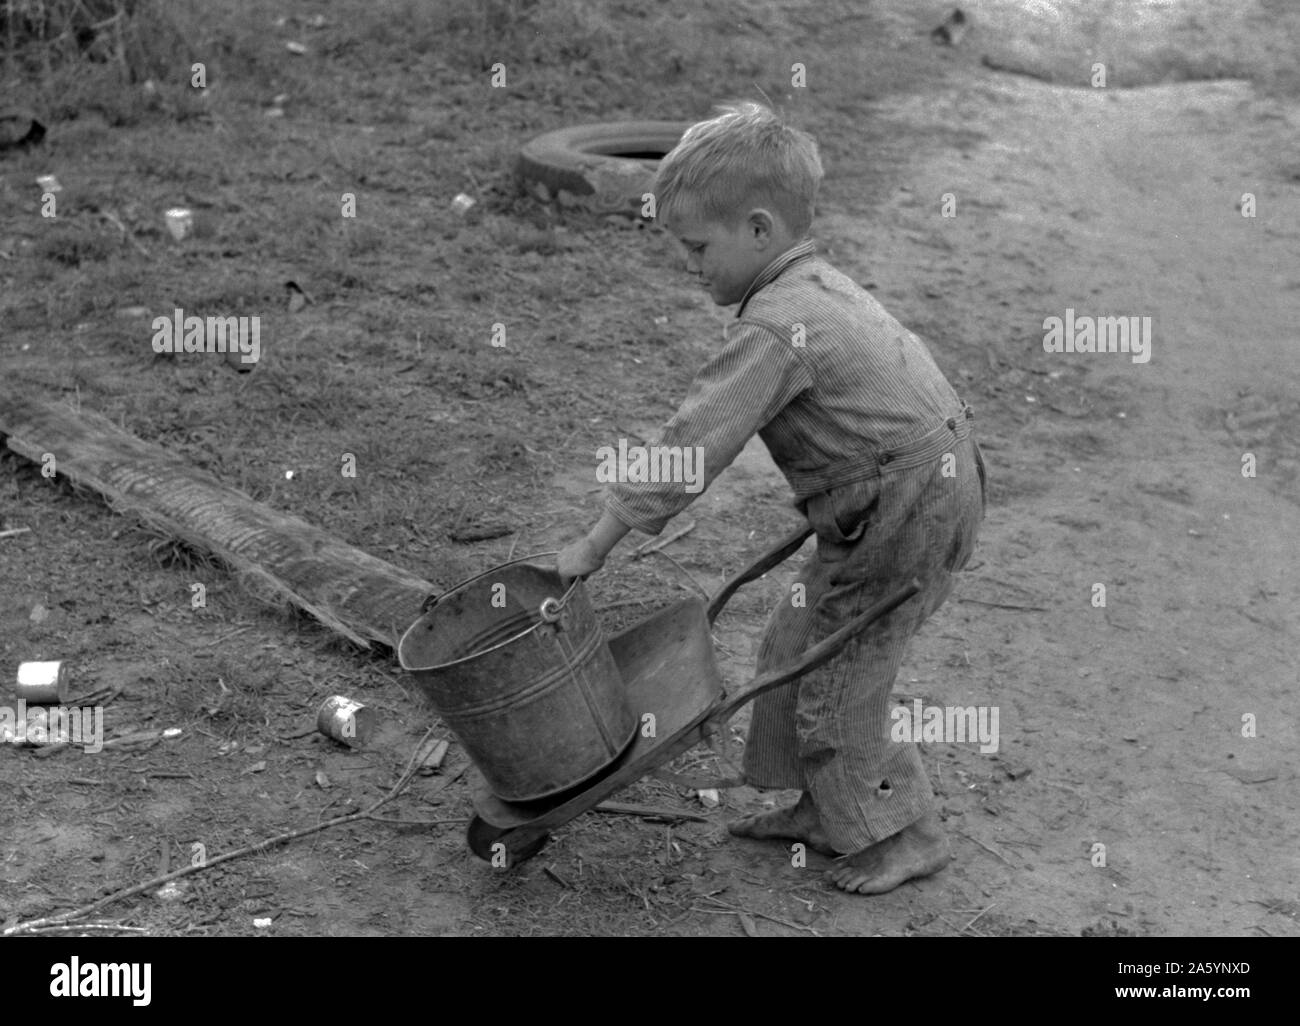 Kind der weißen Wanderarbeitnehmer spielen mit Automobil Werkzeuge in der Nähe von Harlingen, Texas von Russell Lee, 1903-1986, Fotograf Datum 19390101. Stockfoto